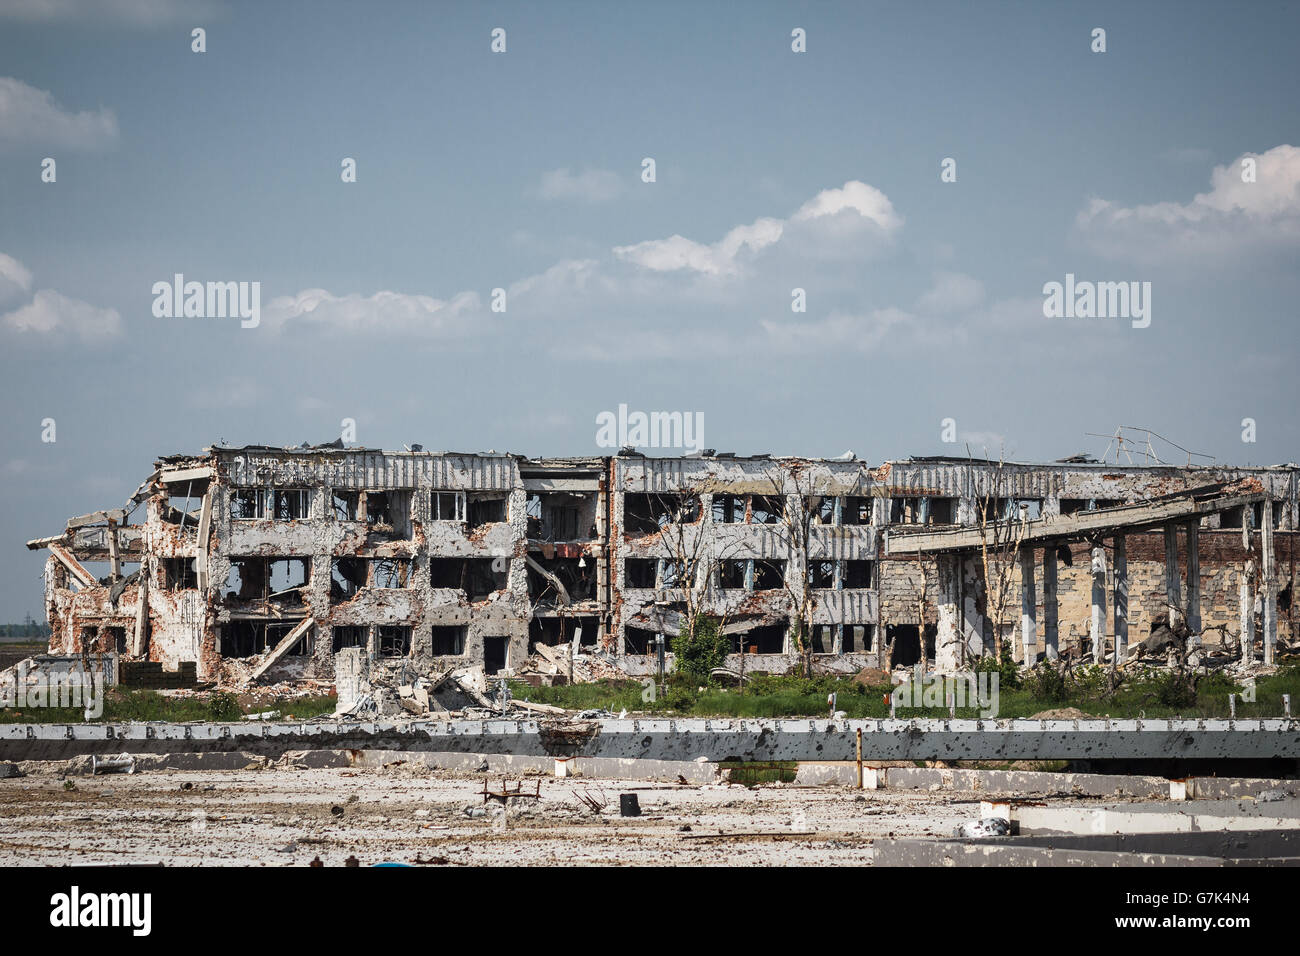 Vista del aeropuerto de Donetsk ruinas Foto de stock